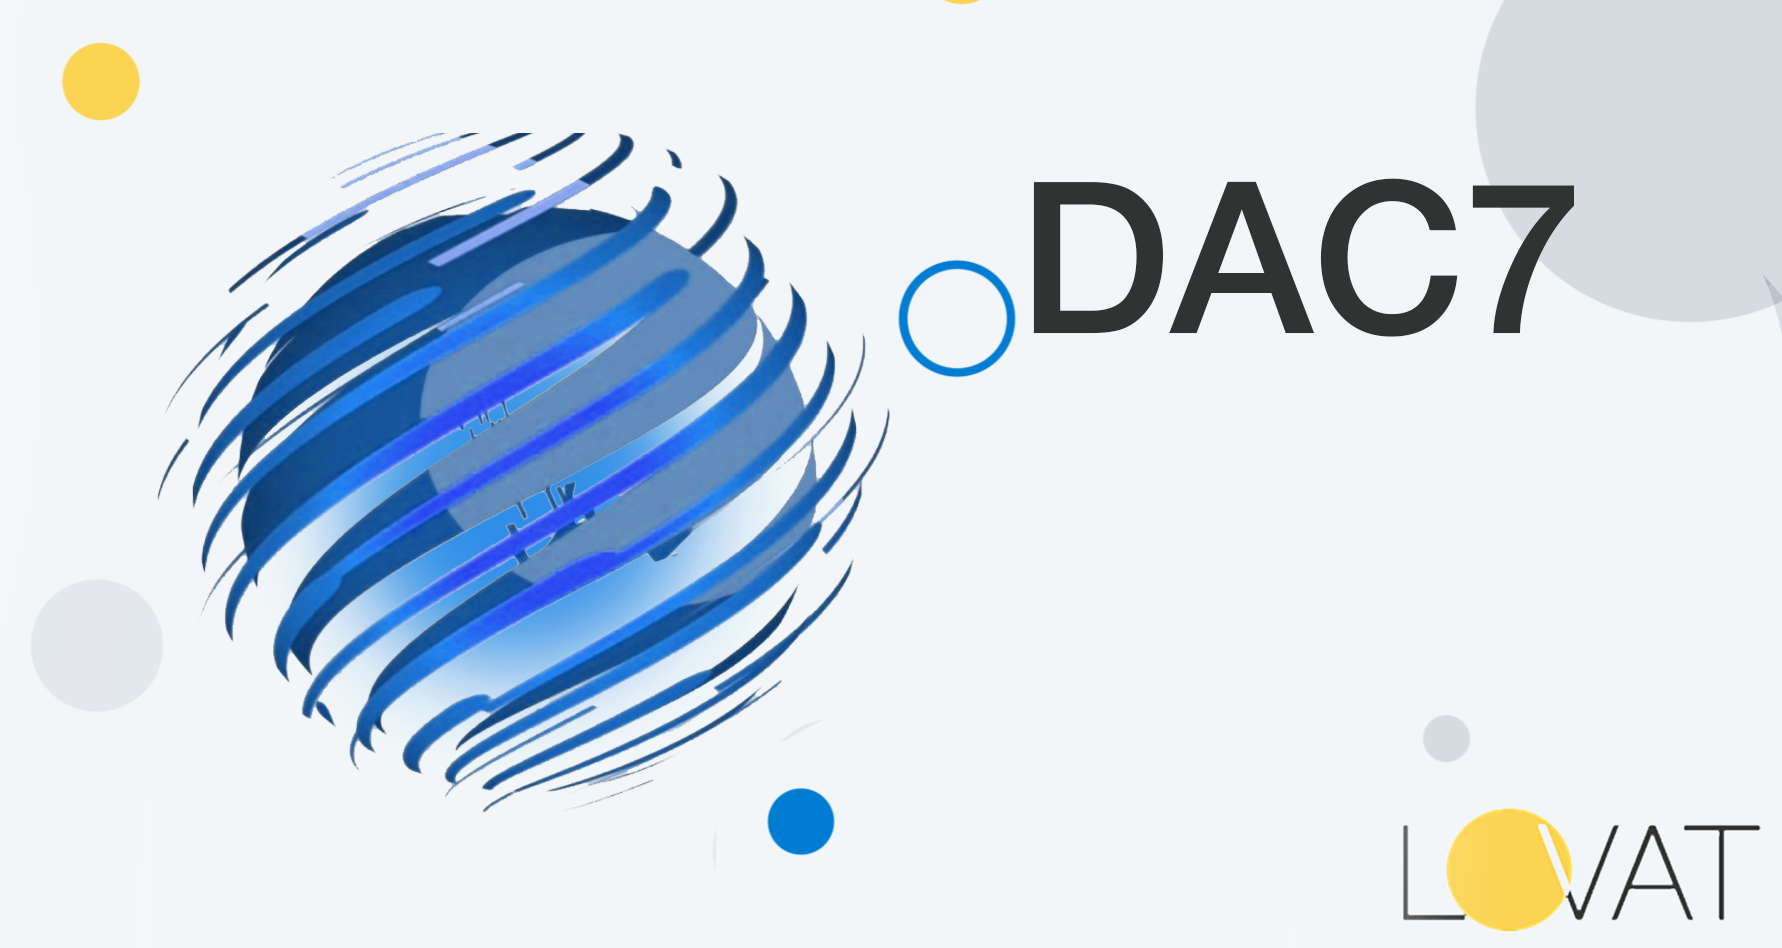 DAC7——在线市场的新型注册